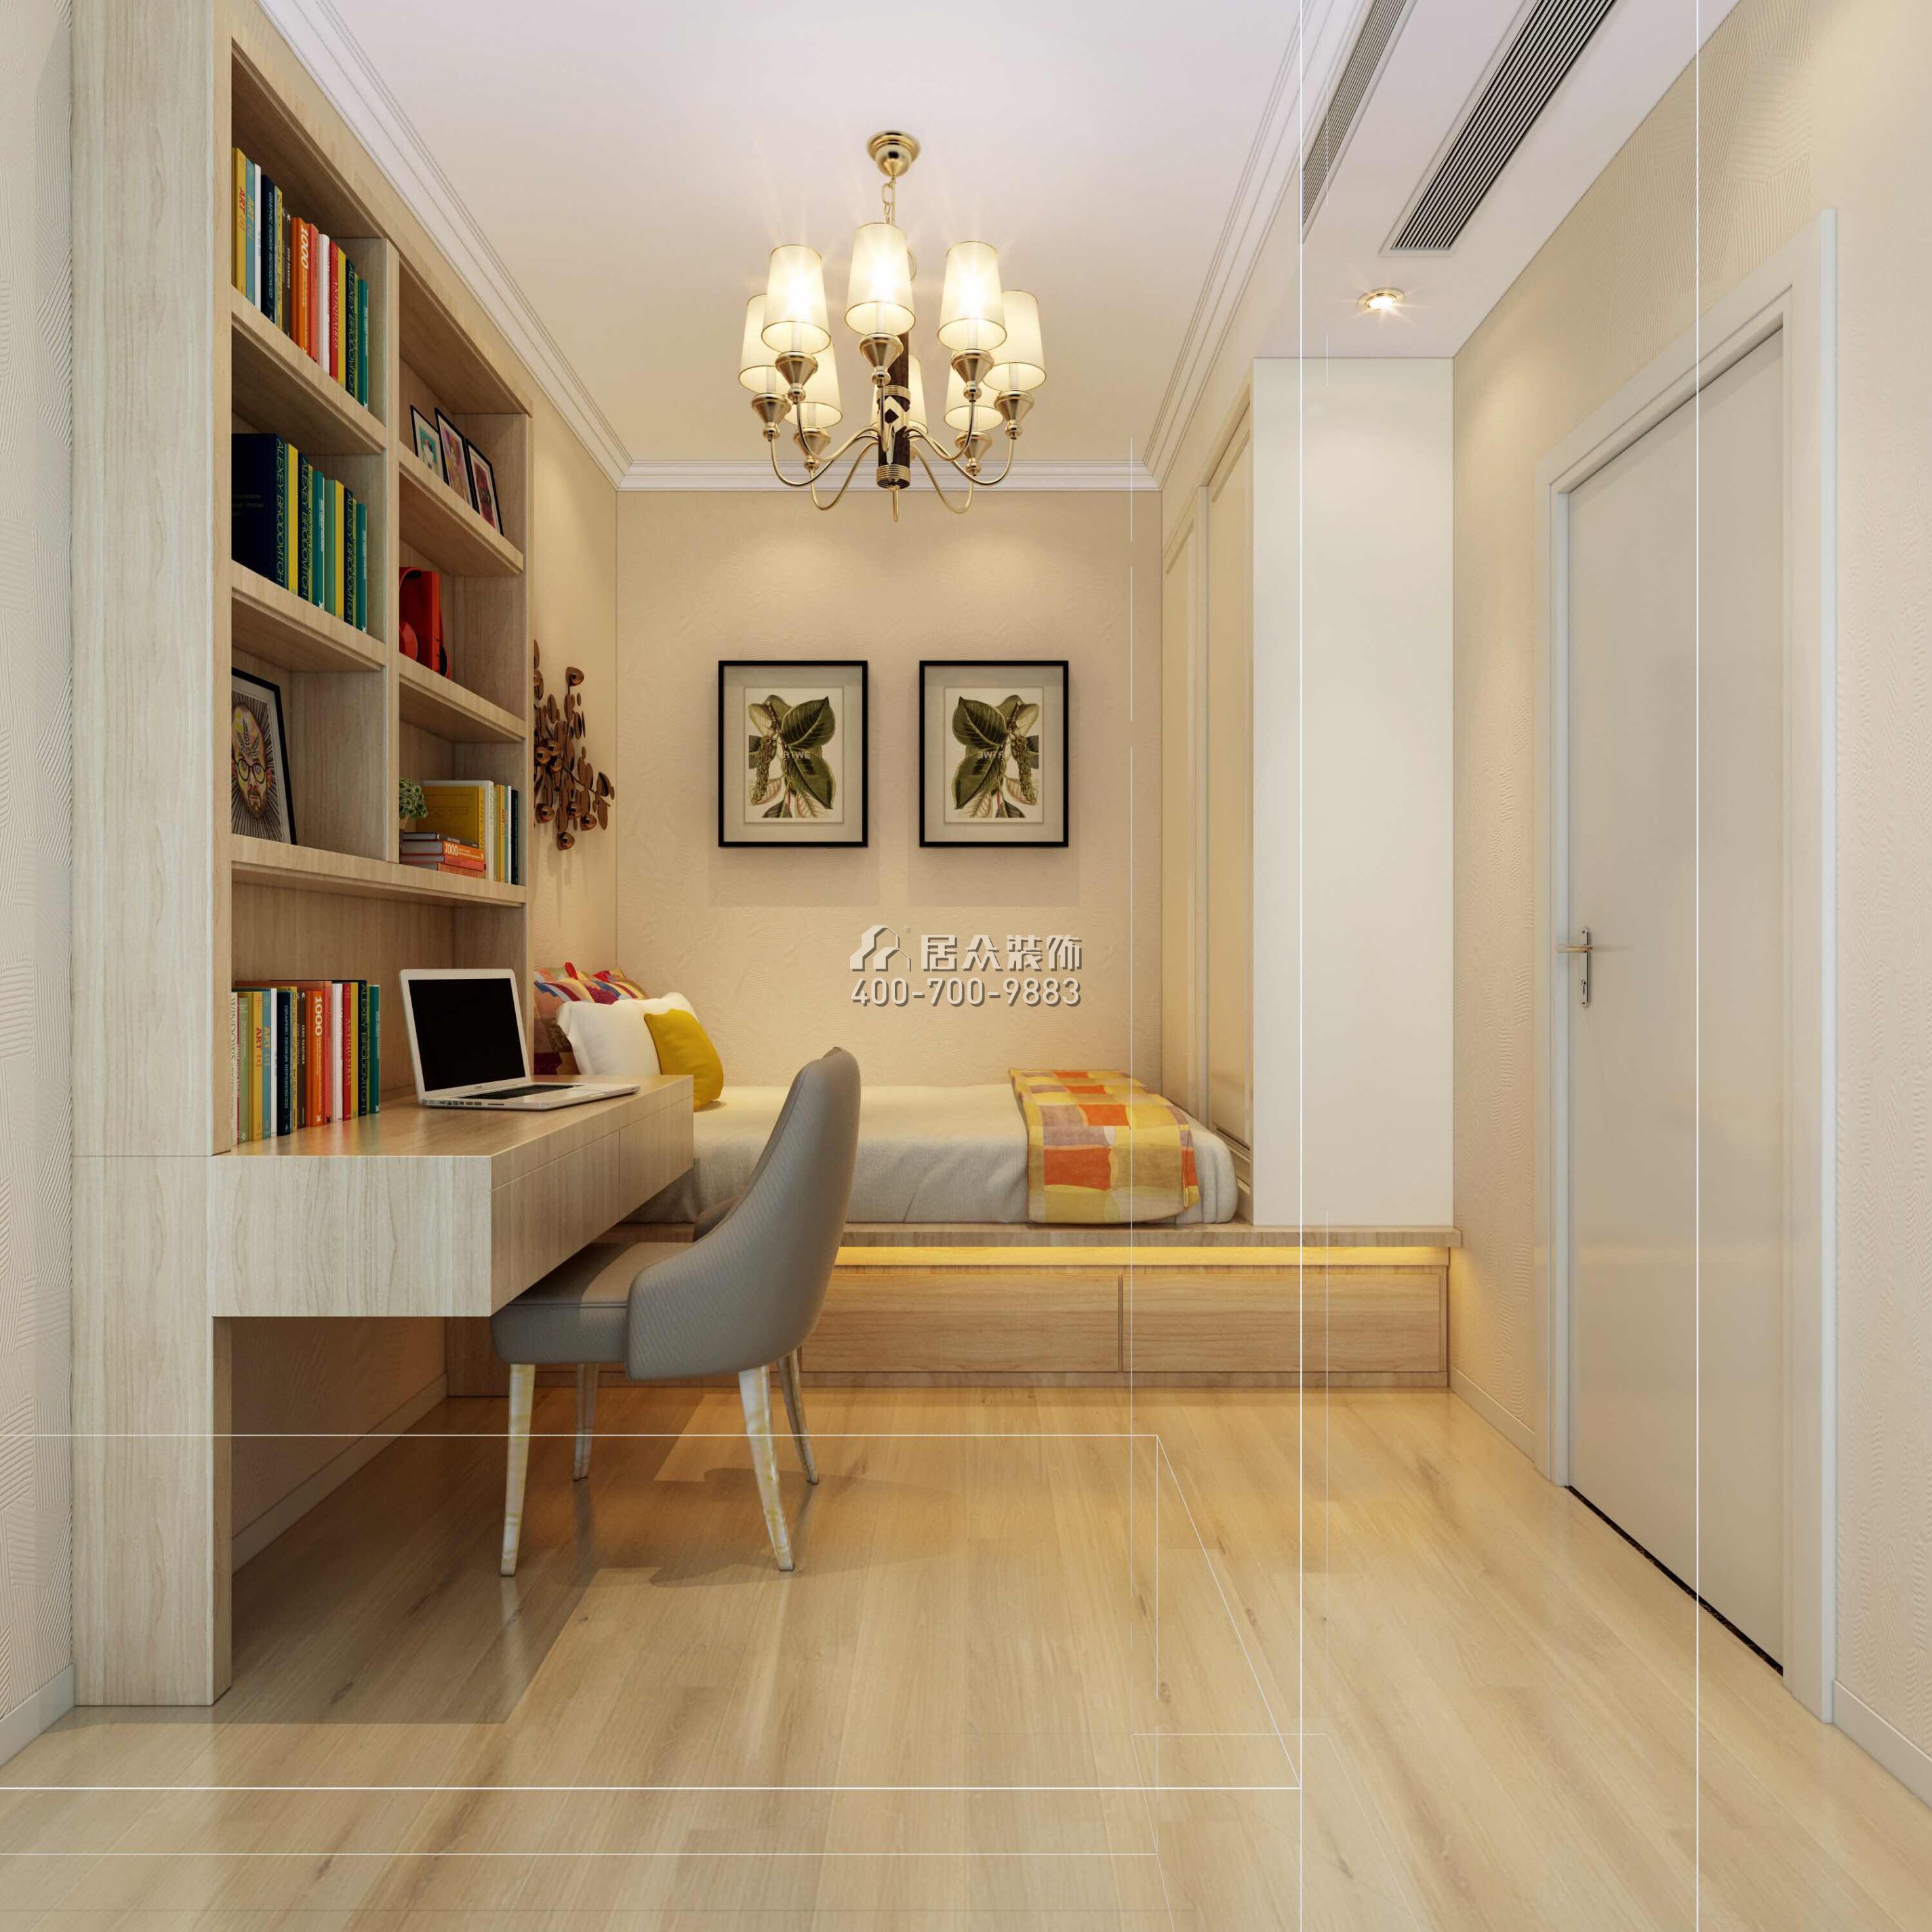 寶生midtown 88平方米現代簡約風格平層戶型臥室書房一體裝修效果圖